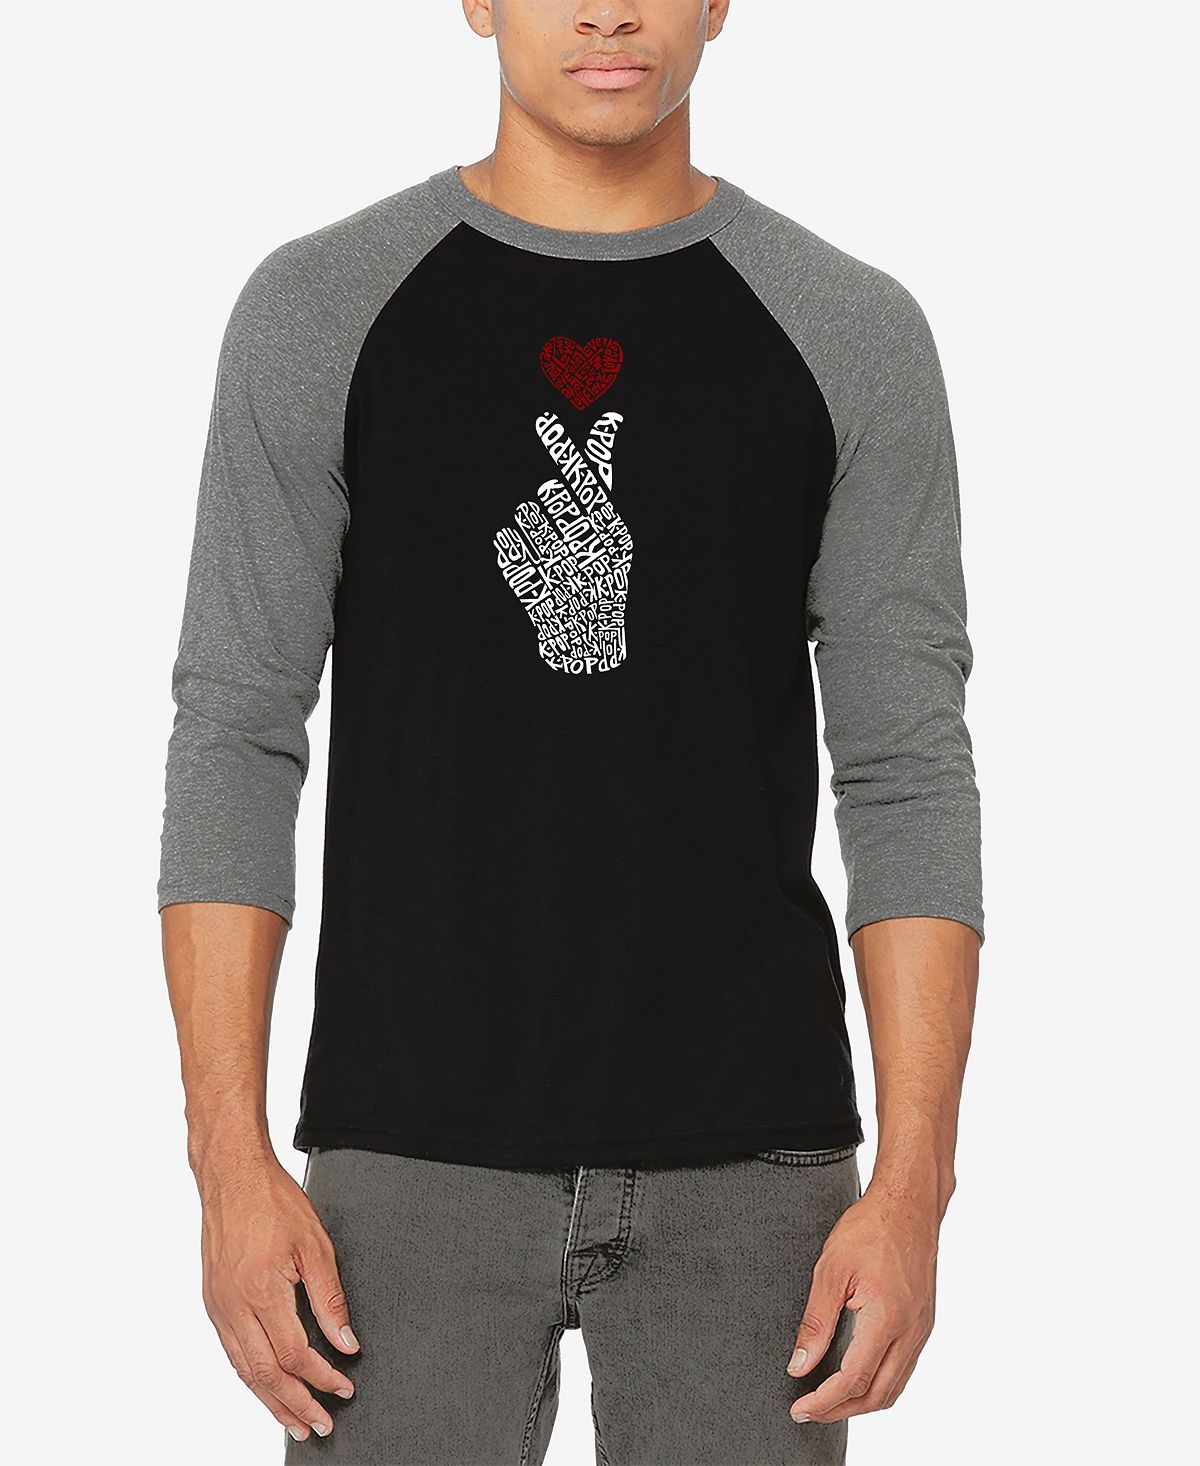 Мужская бейсбольная футболка реглан с рукавом 3/4 k-pop word art футболка LA Pop Art, мульти набор значков k pop